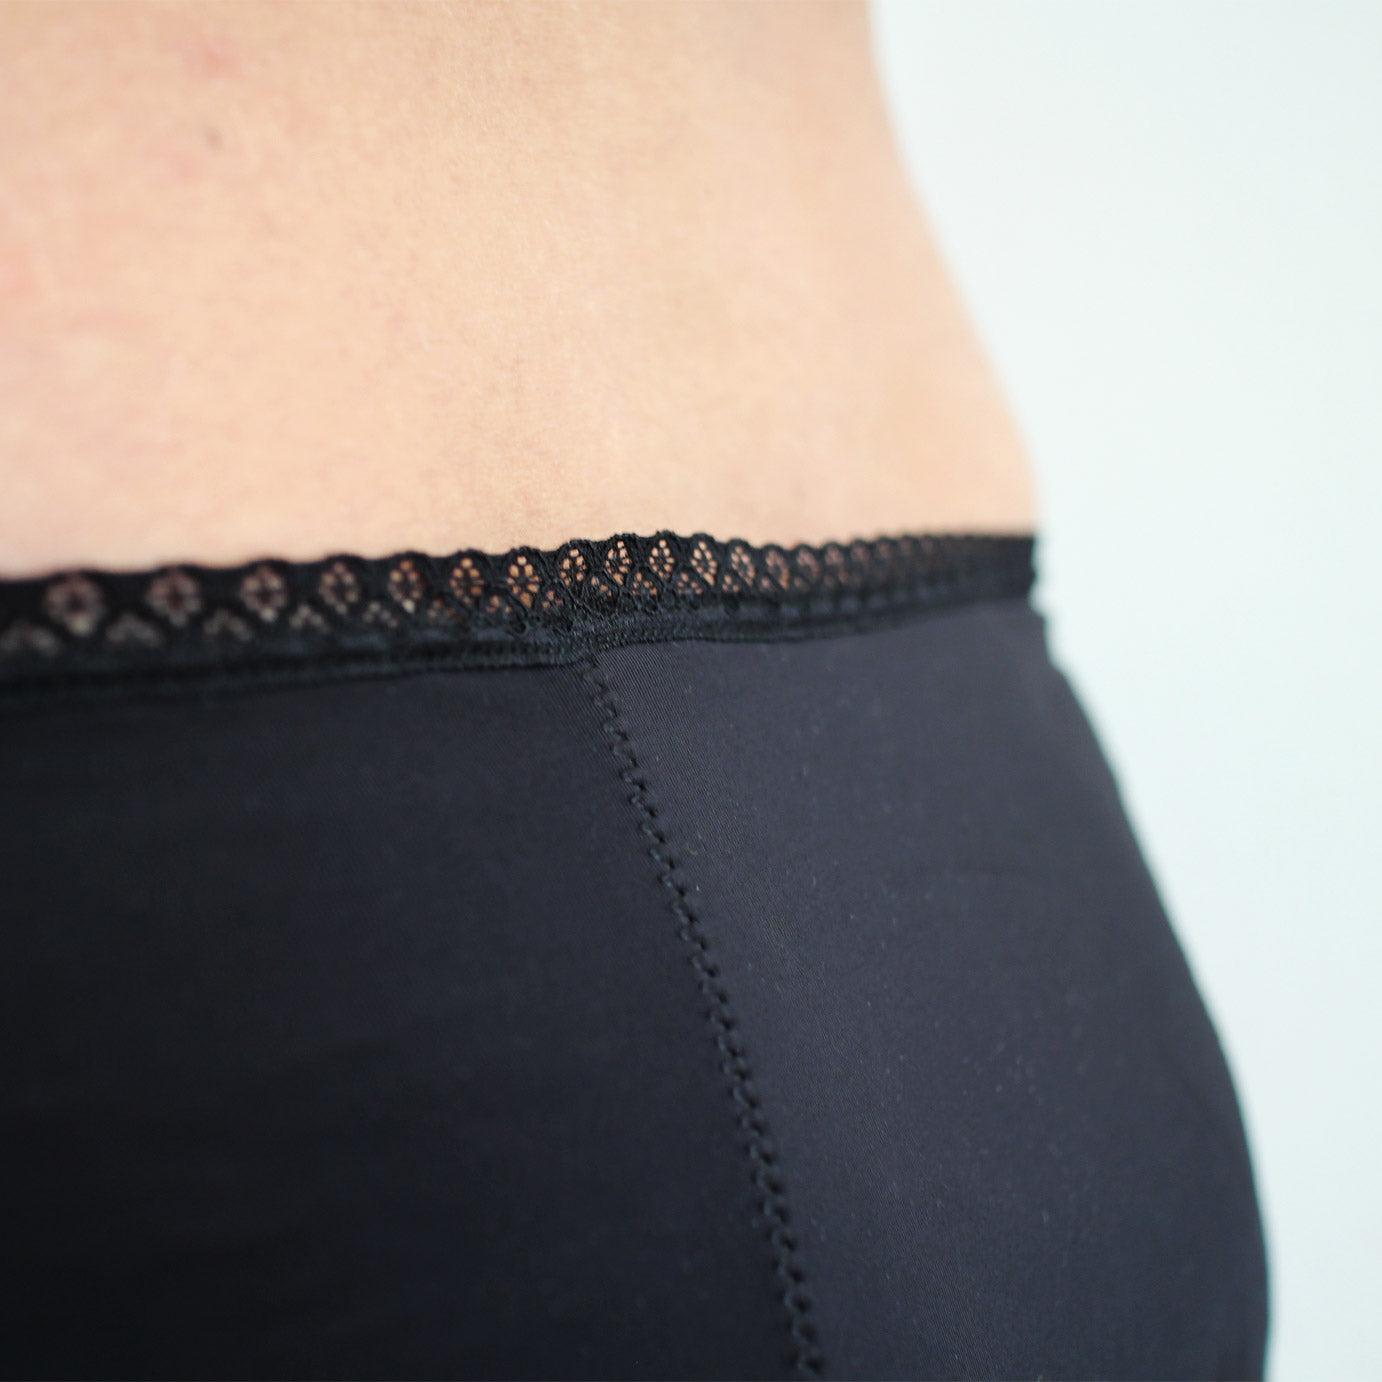 culotte menstruelle noire modèle billy détail dentelle